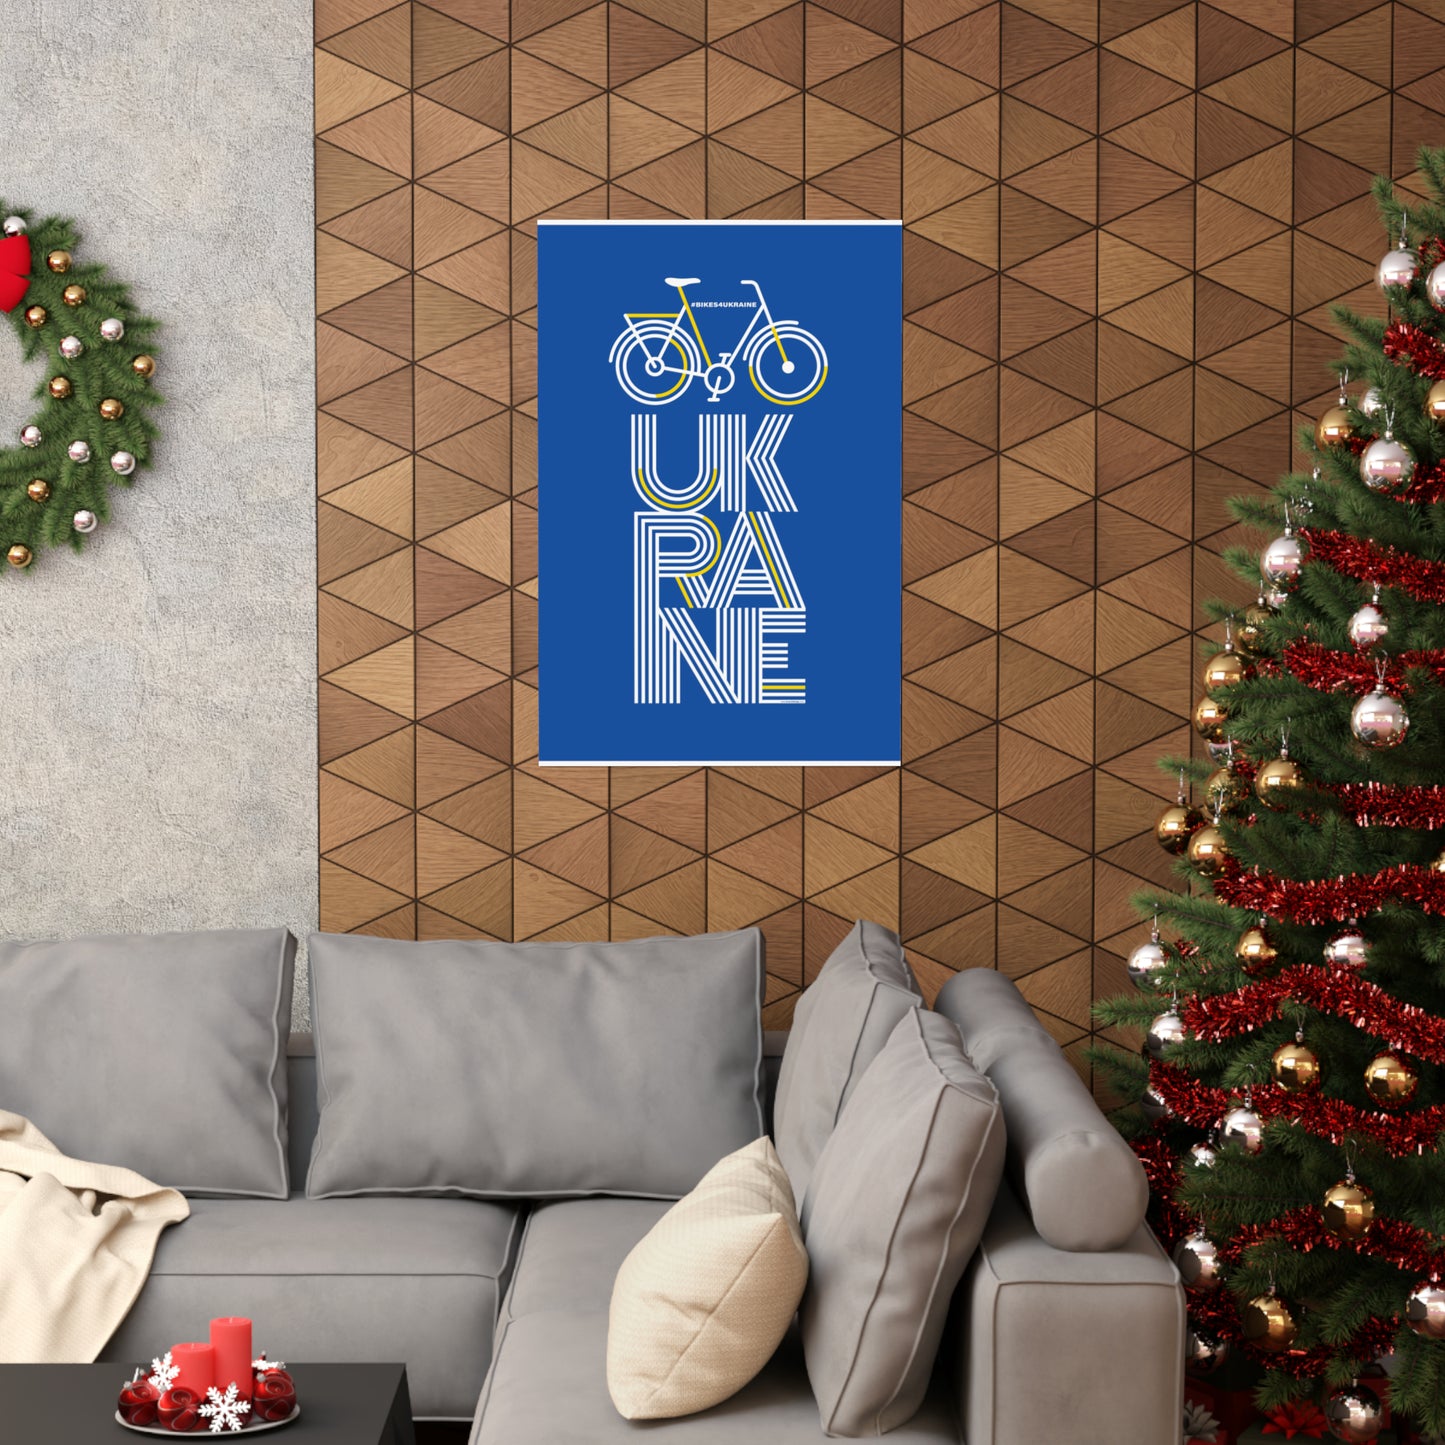 Bikes4Ukraine - Design by Brian Branch (CA) - Blue Design